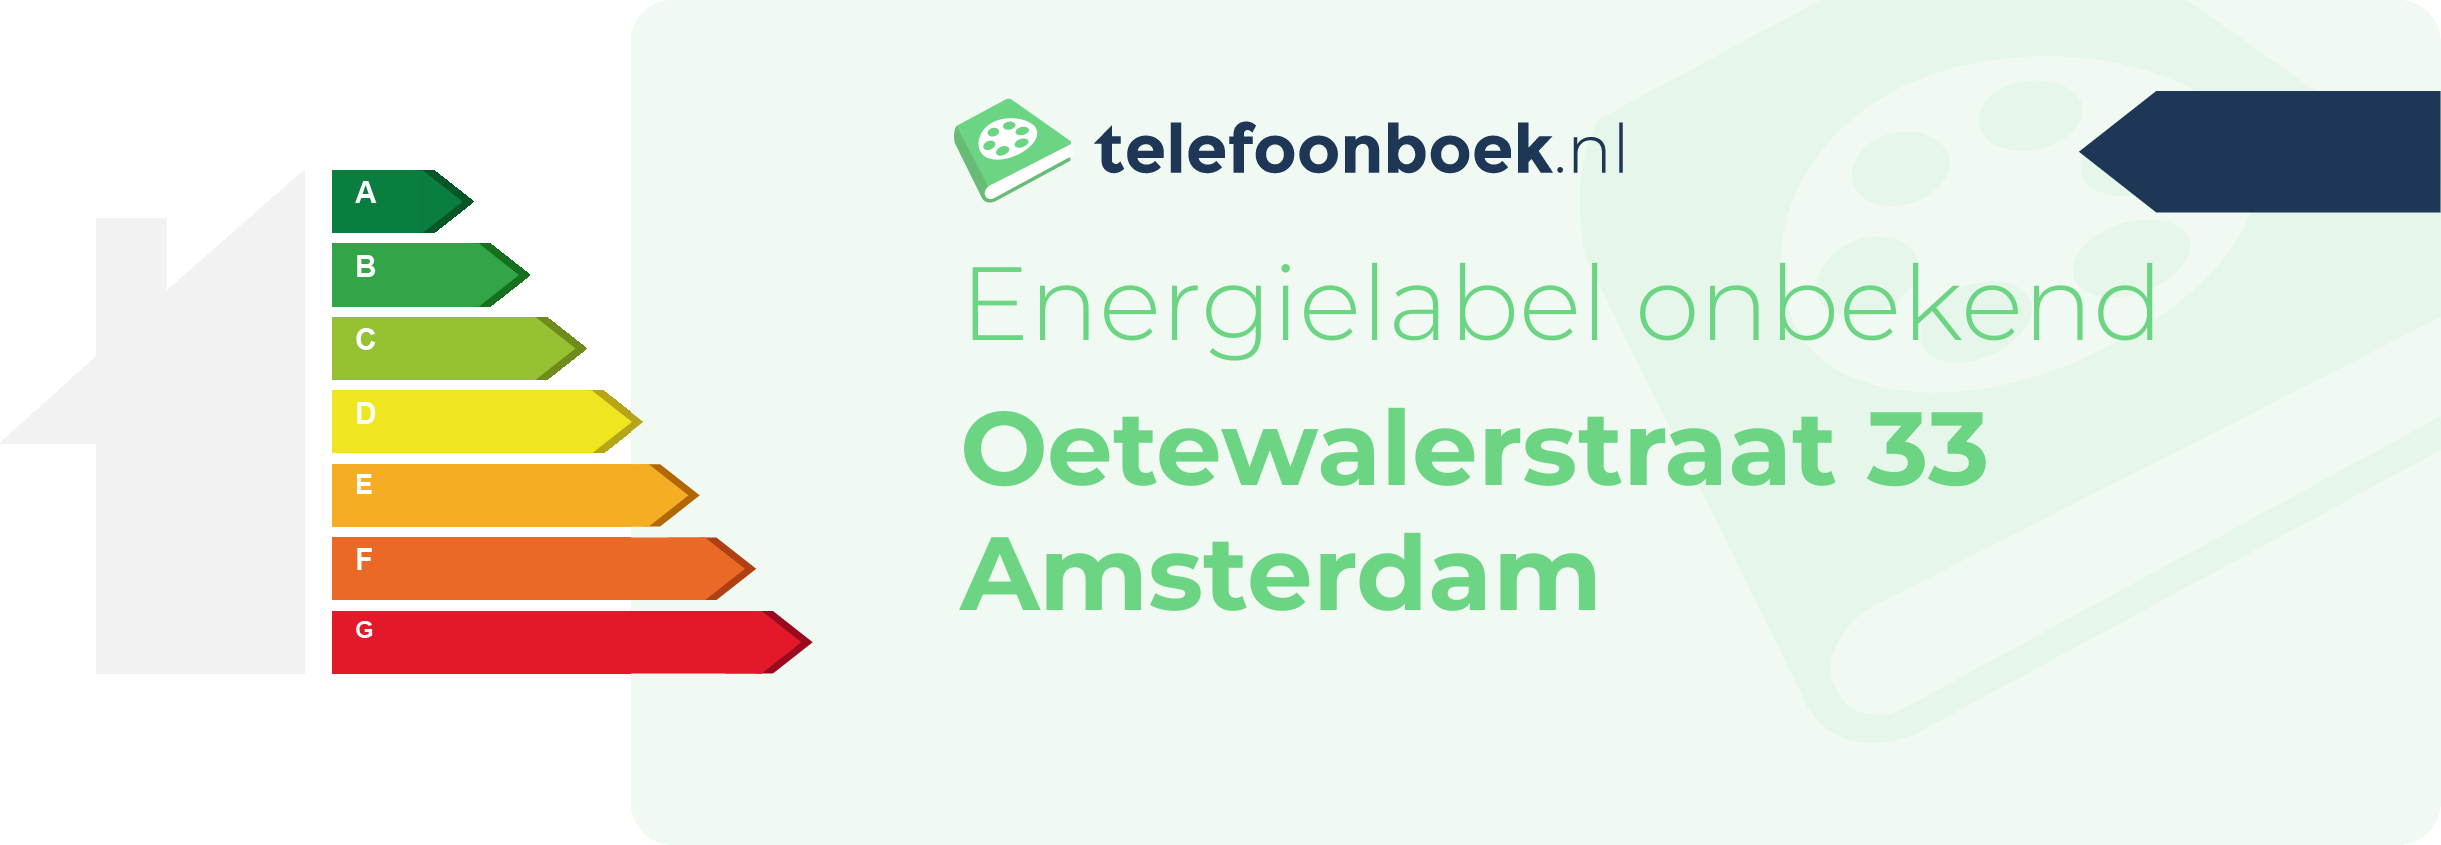 Energielabel Oetewalerstraat 33 Amsterdam